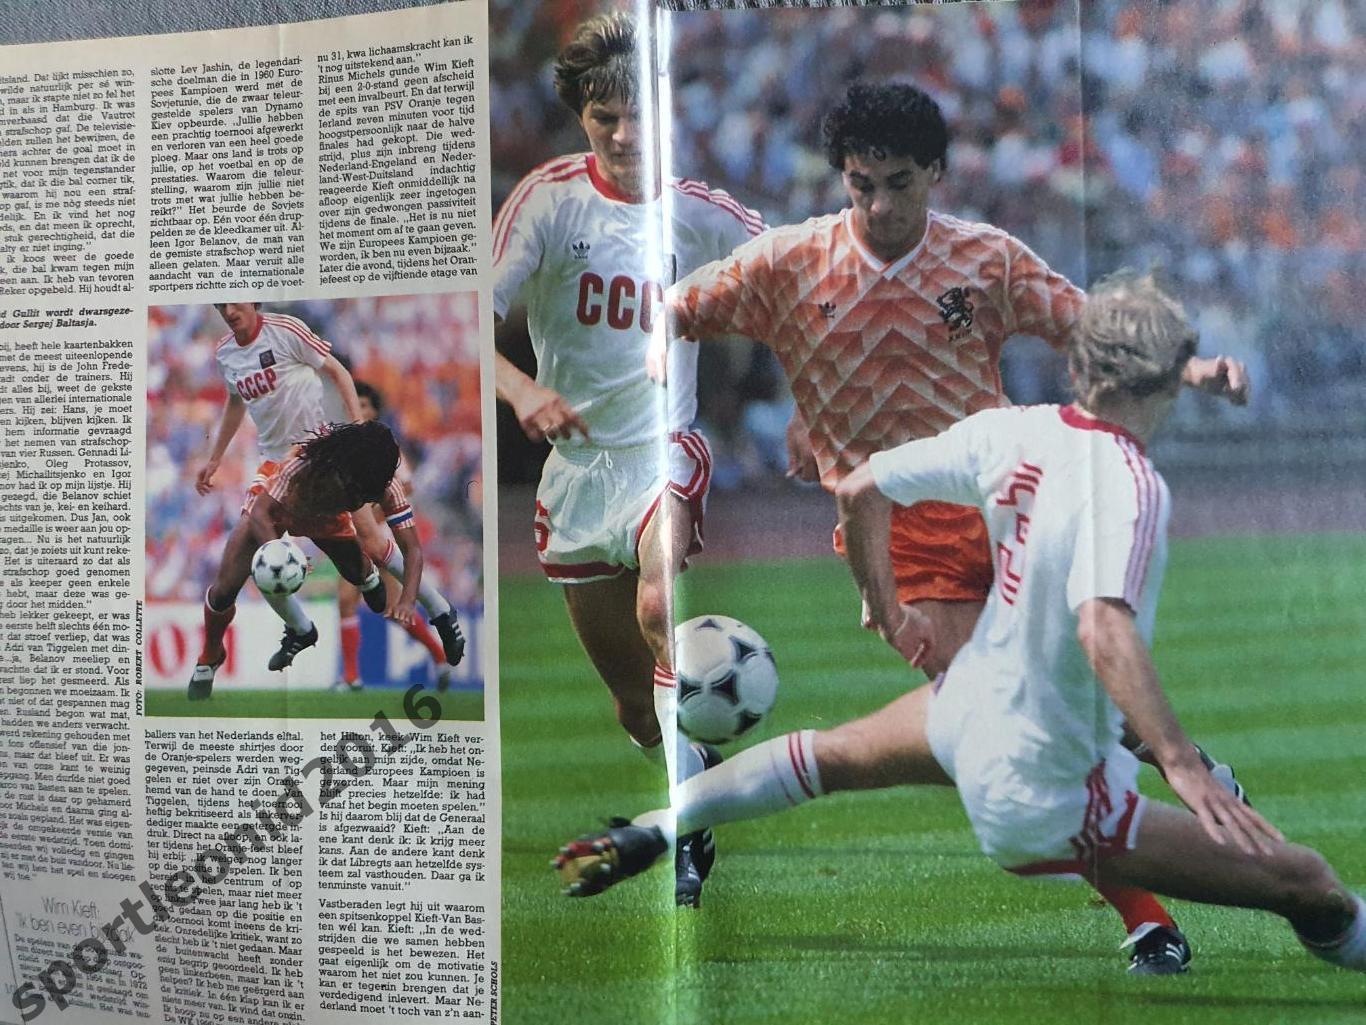 Voetbal International 1988.Годовая подписка.52 номера +4 спецвыпуска к Евро-88.1 7